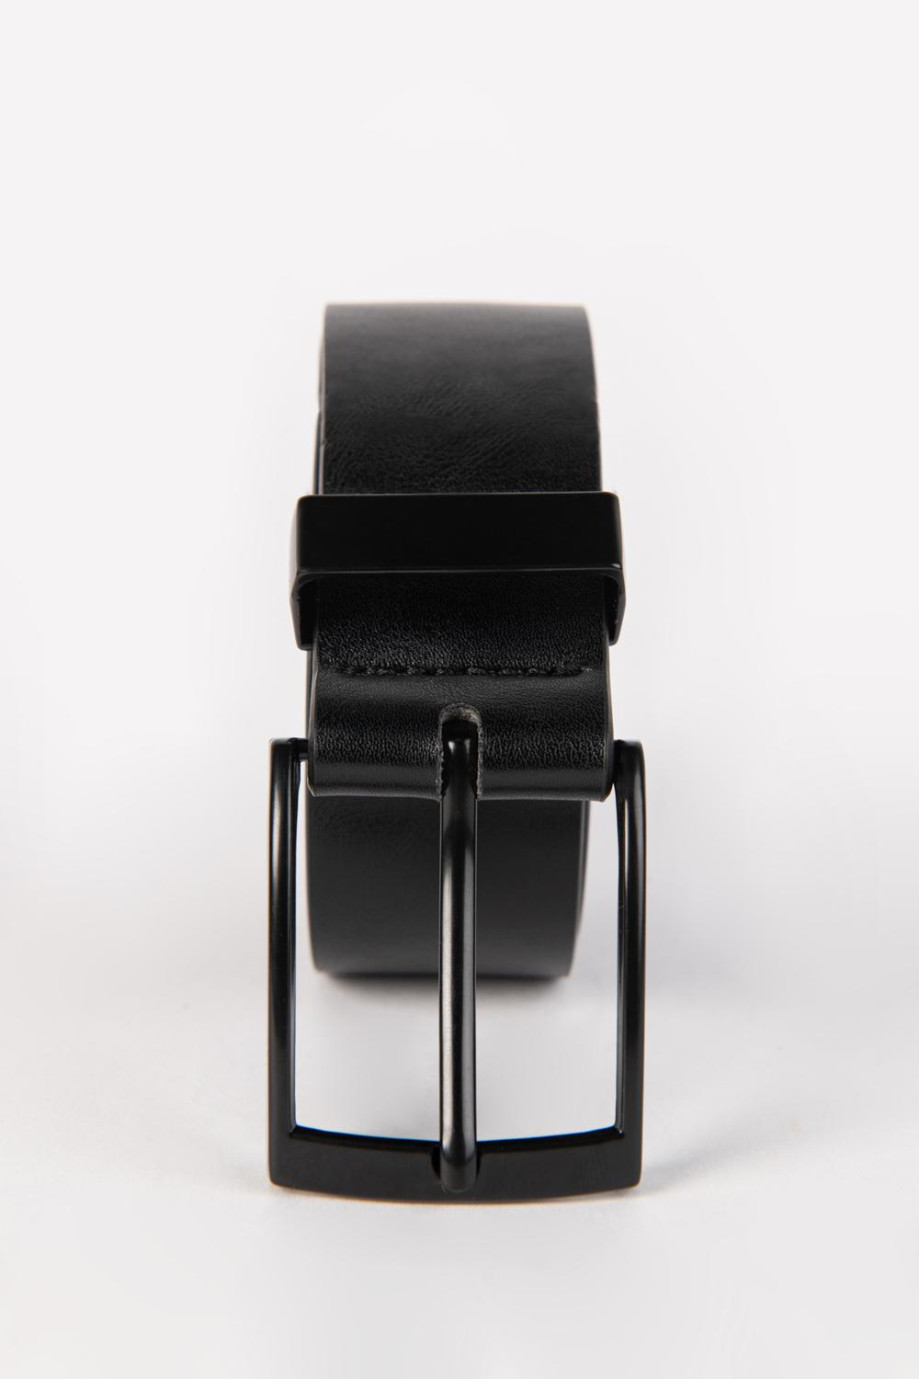 Cinturón liso negro con hebilla cuadrada metálica mate